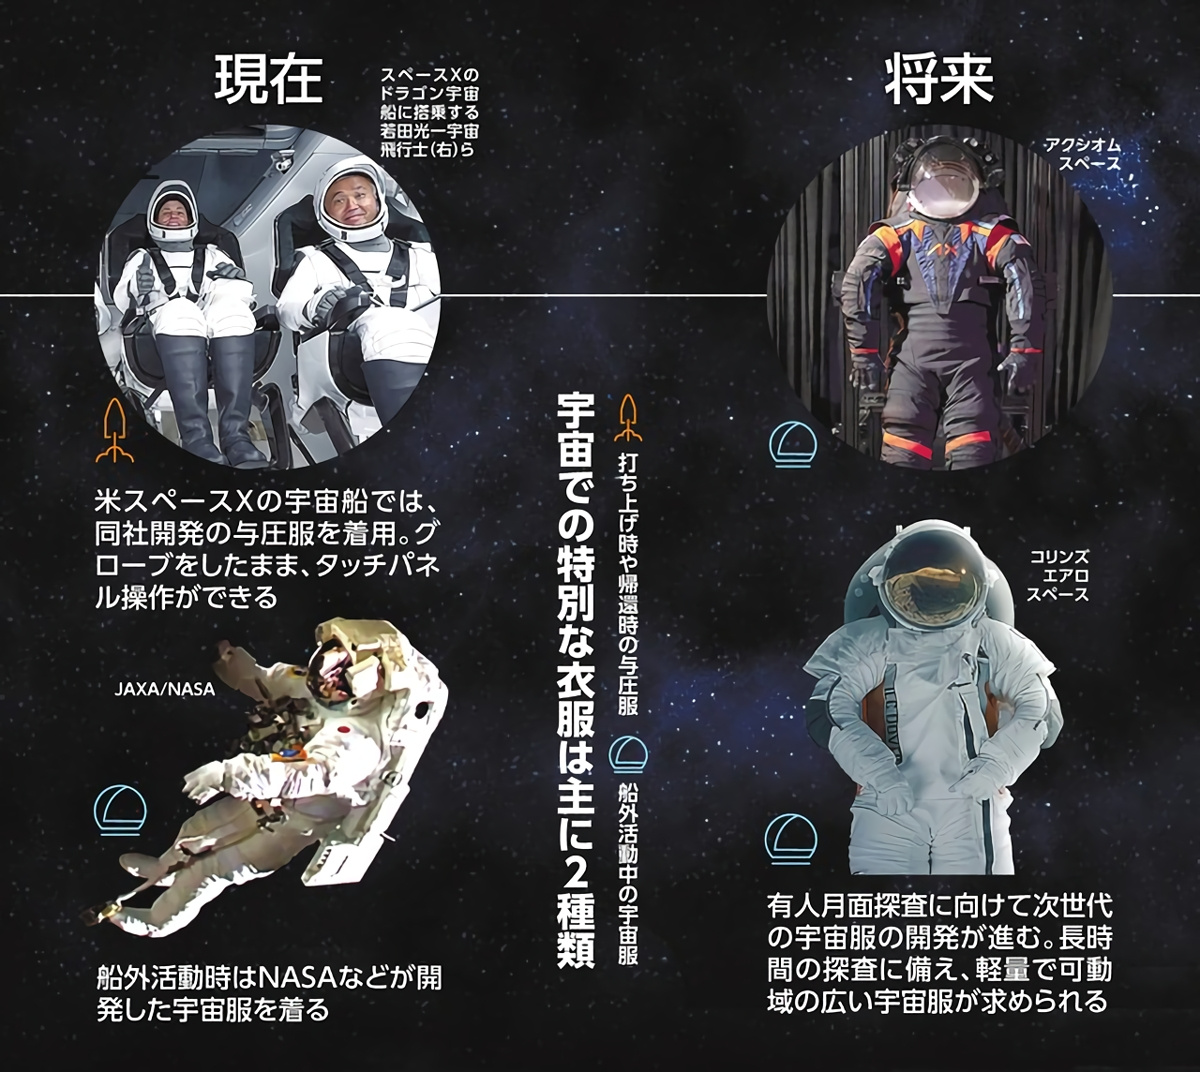 現在と将来の宇宙服。将来の月面有人探査に向けた宇宙服の開発が進む